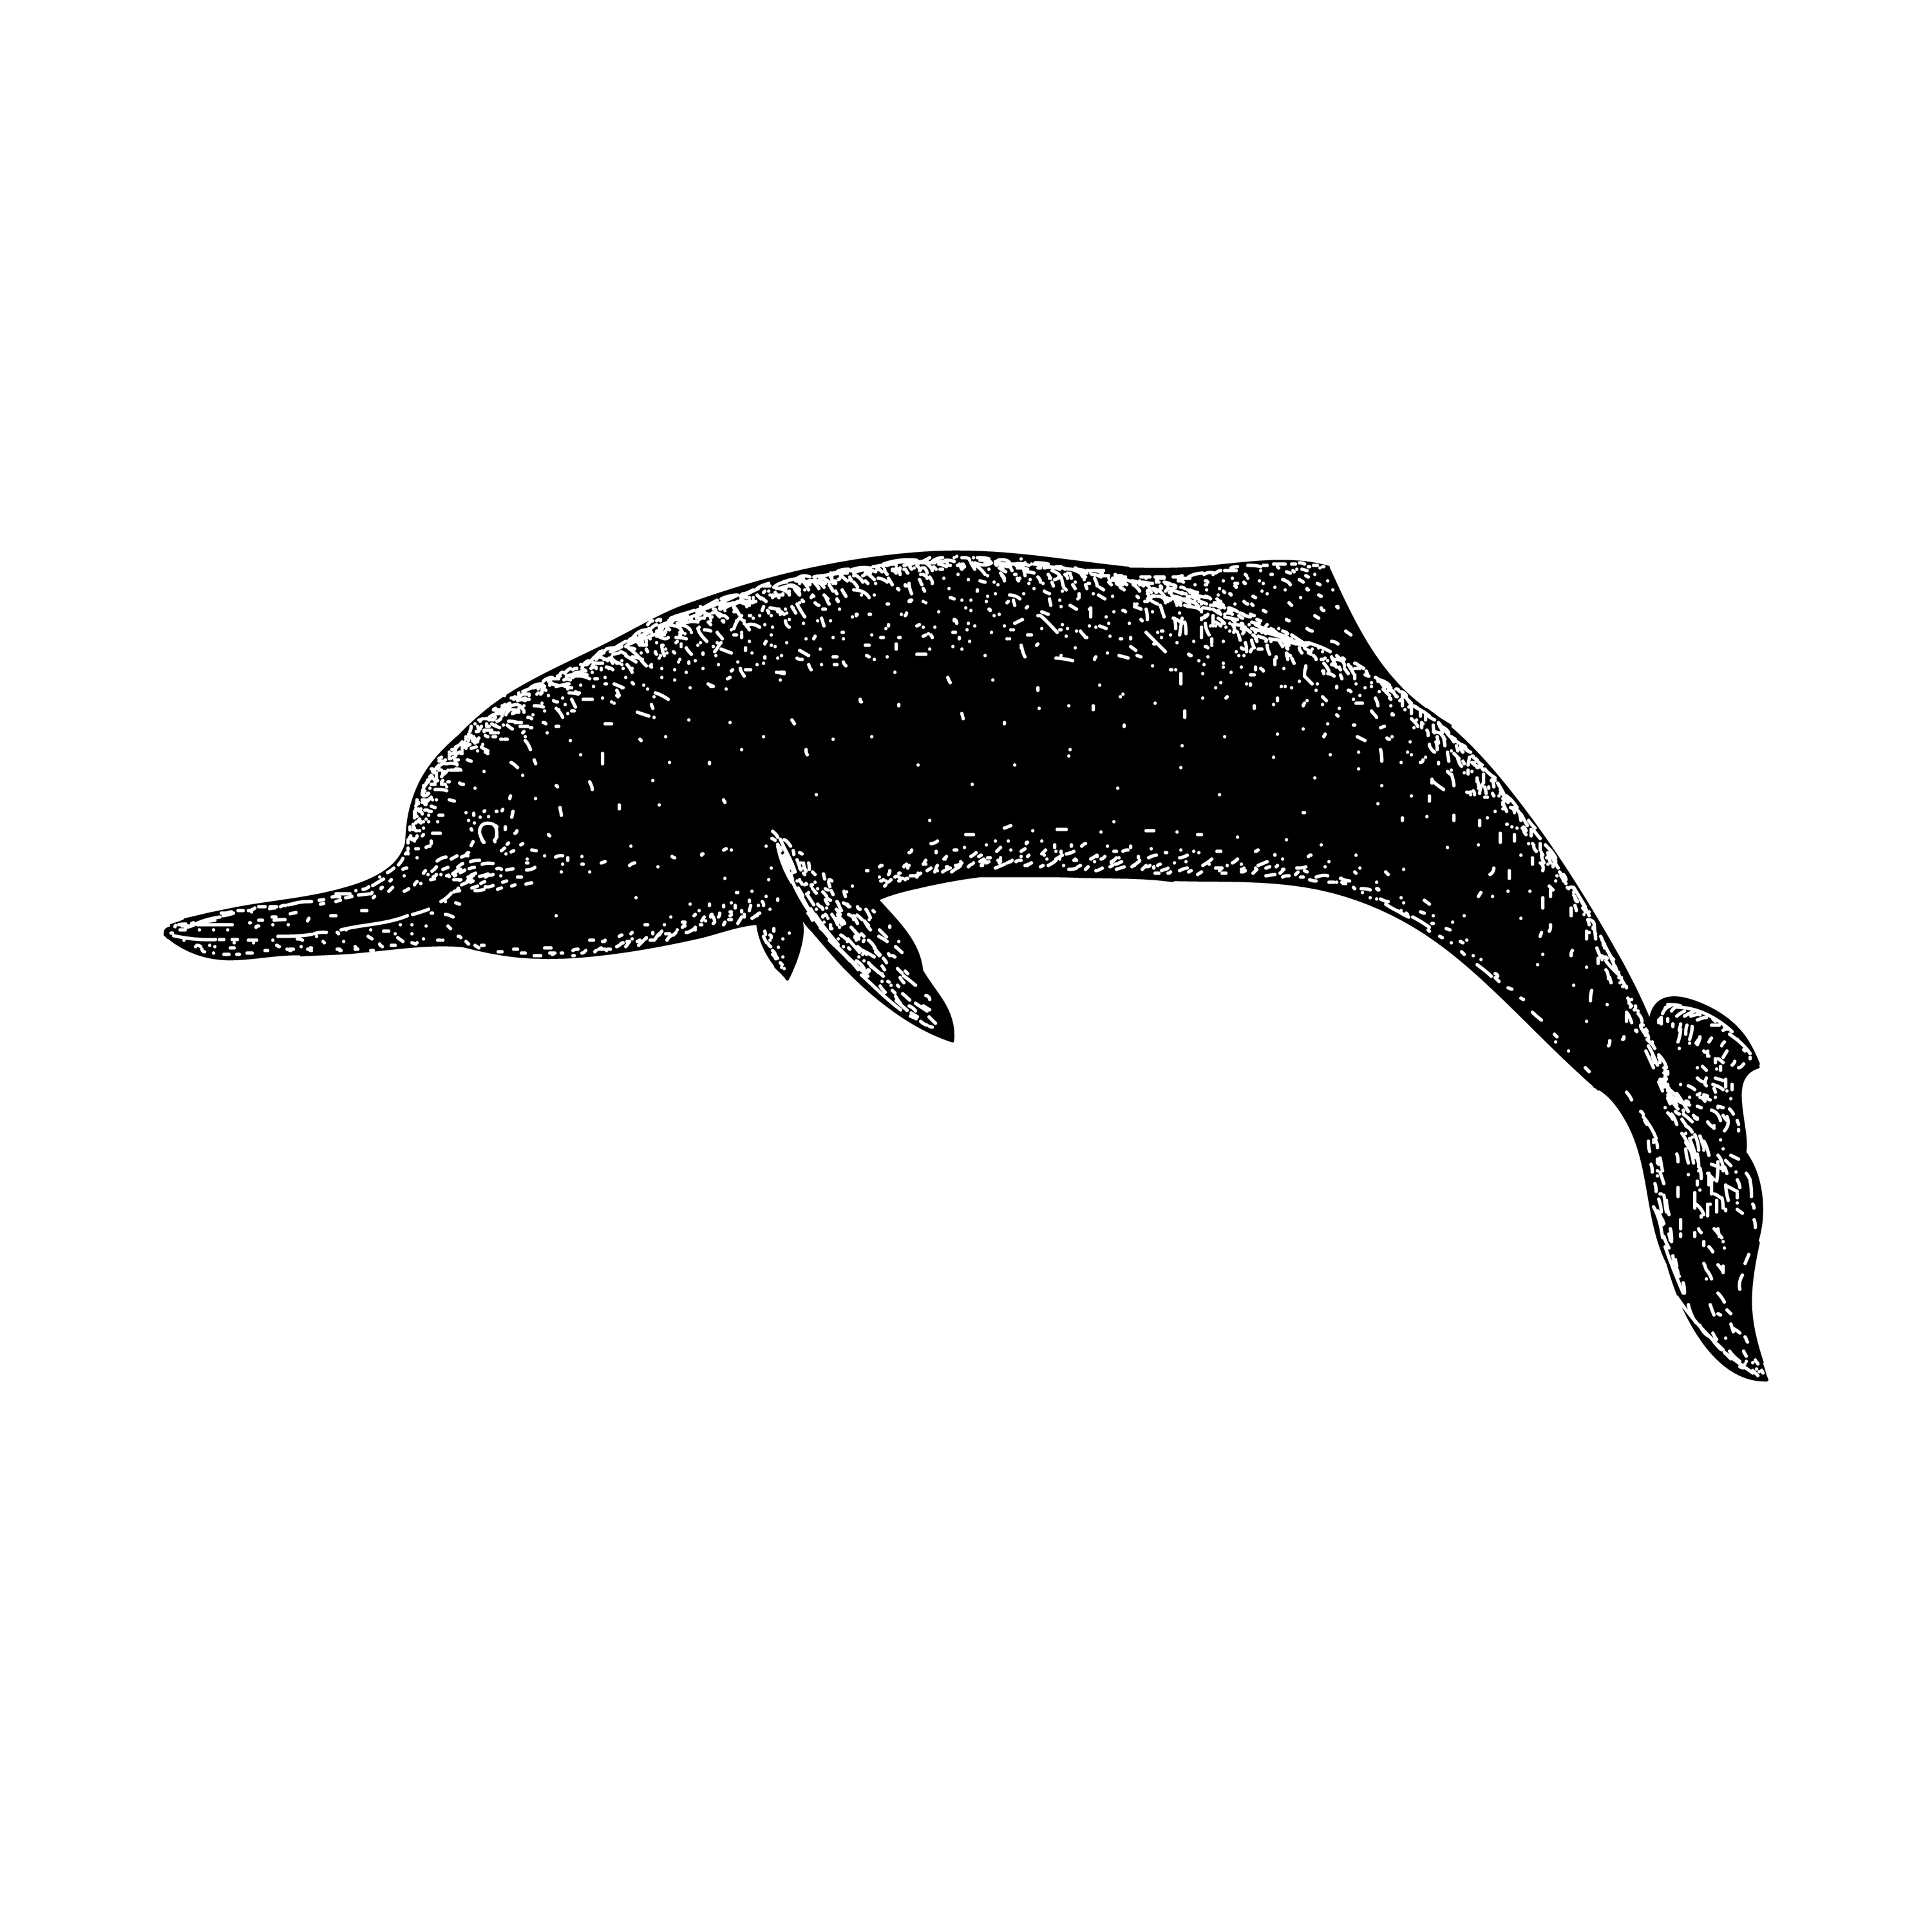 Ist der Jangtse-Delfin für immer verschwunden?